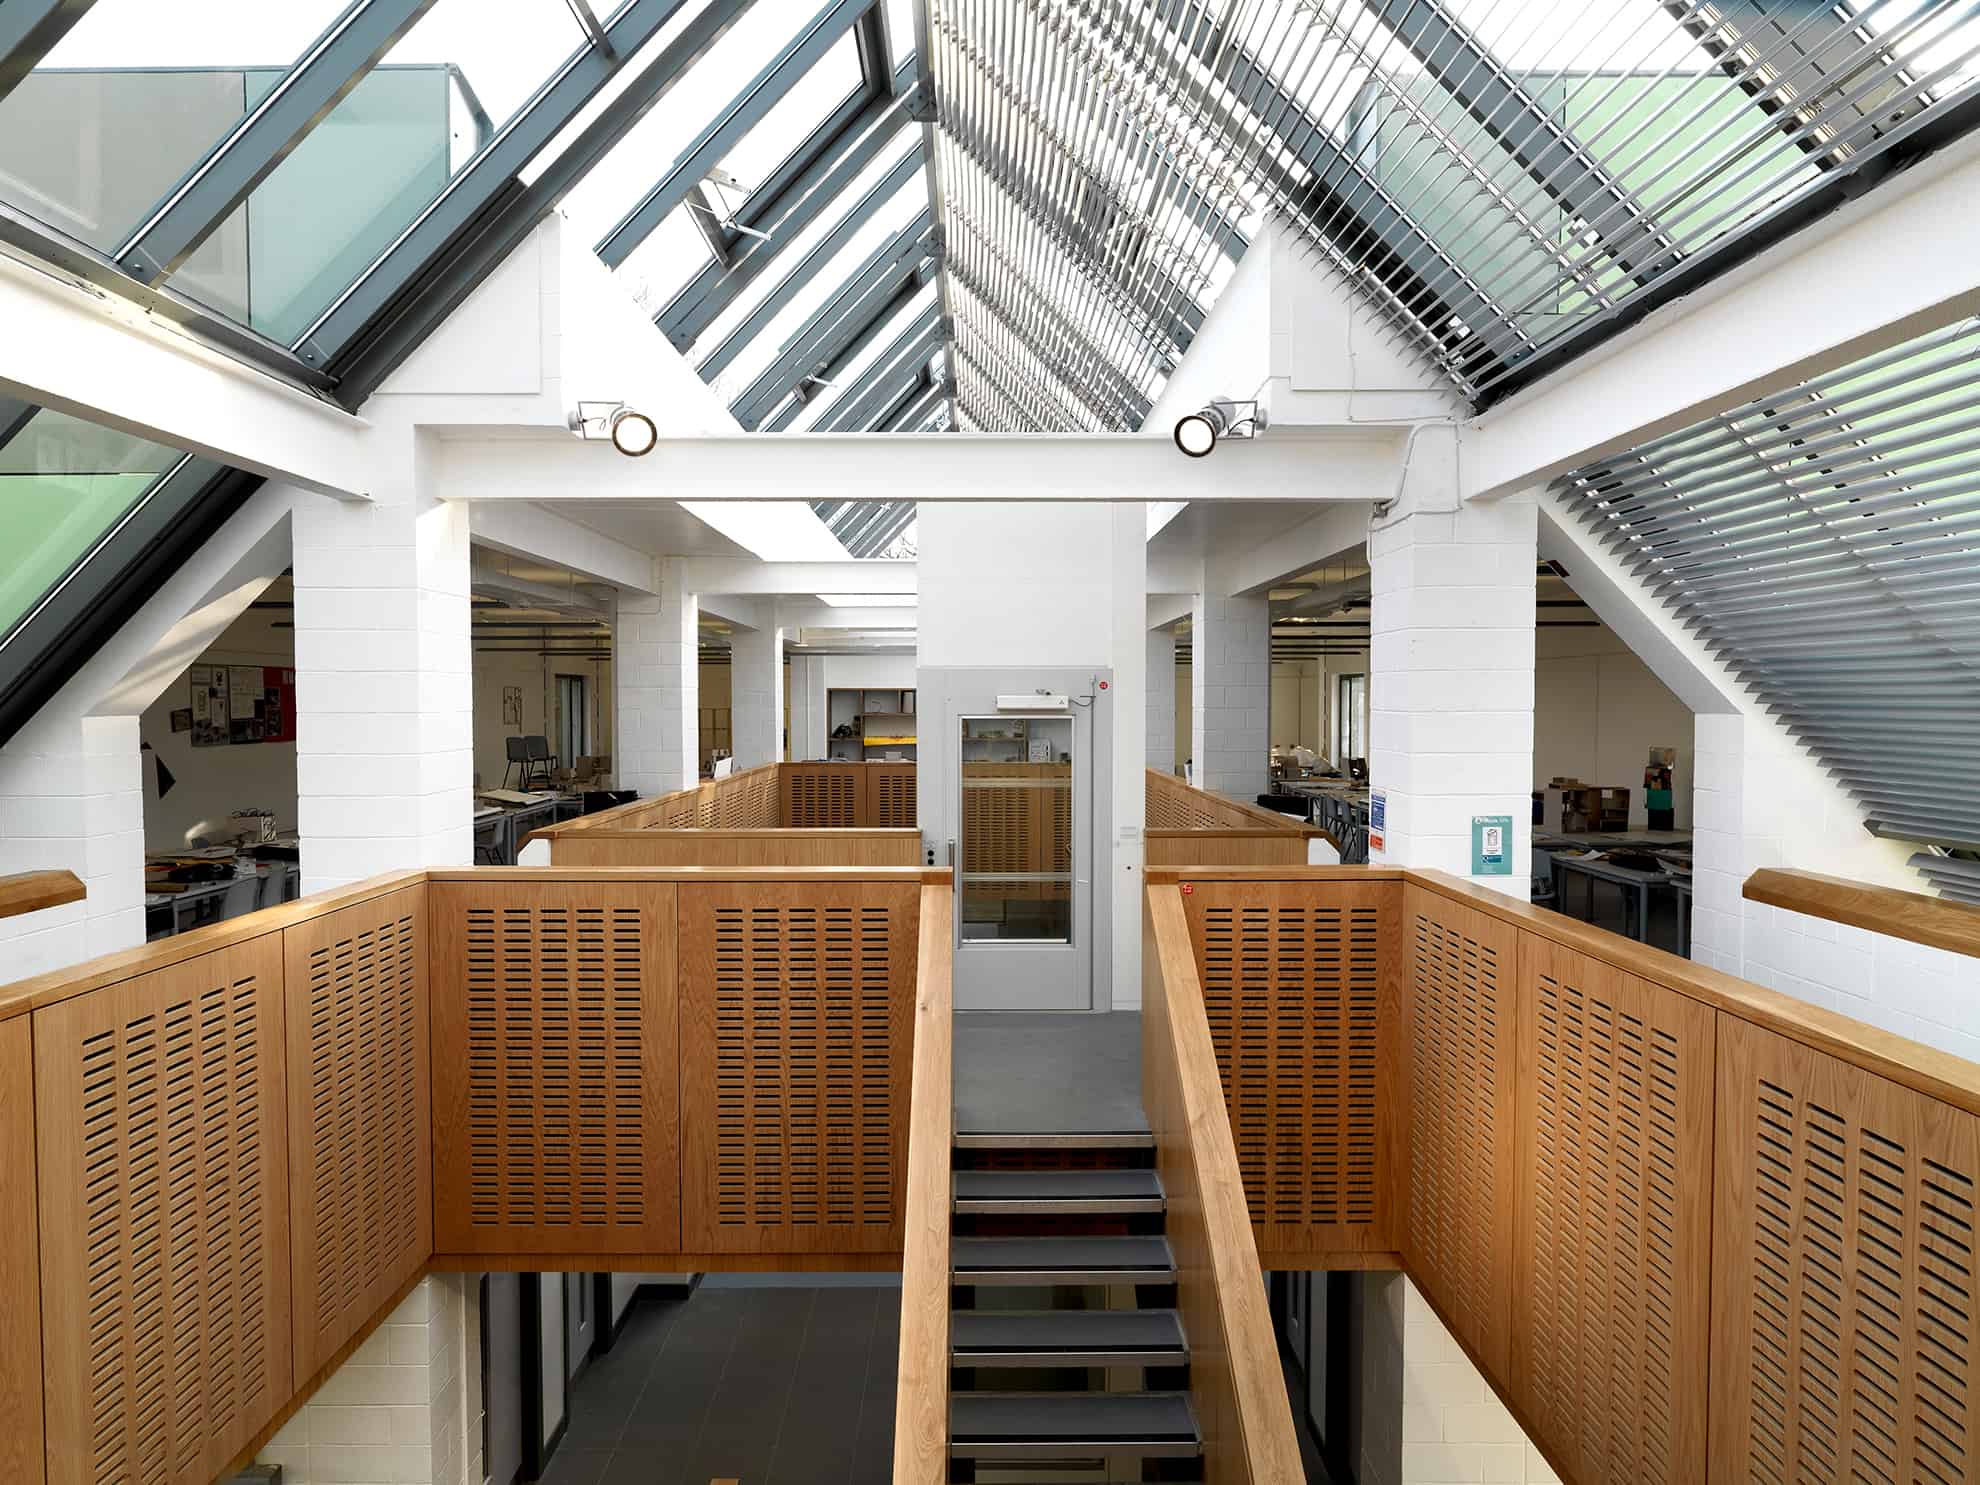 Department of Architecture, Queen’s University, Belfast